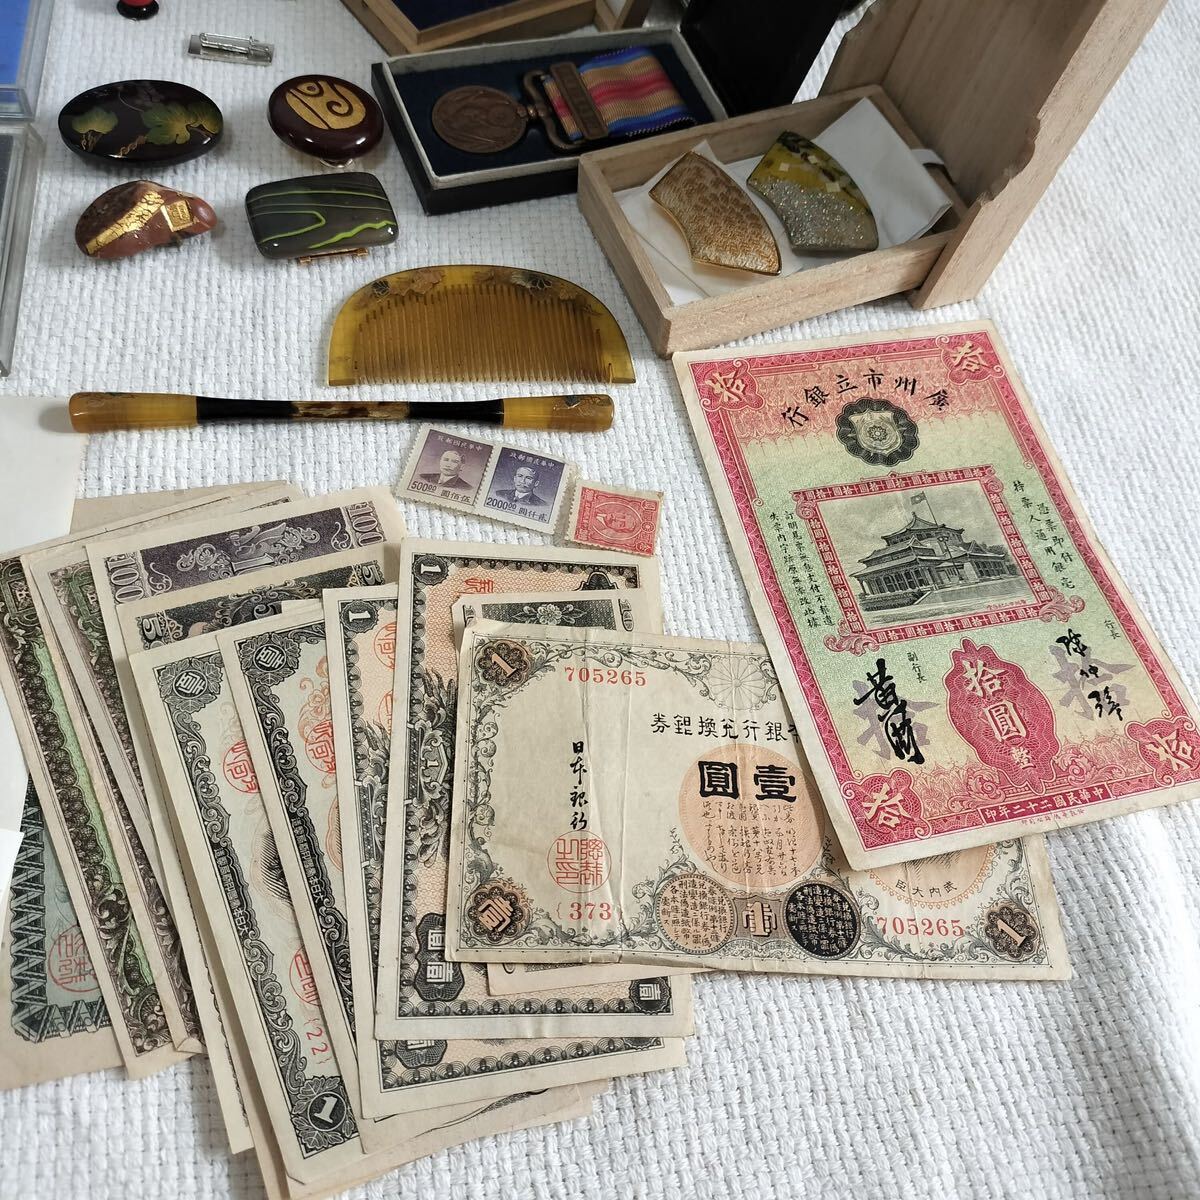 1 иен старт продажа комплектом кожаная сумка орден монета медаль obi . марка China старая монета панцирь черепахи старый . античный много 